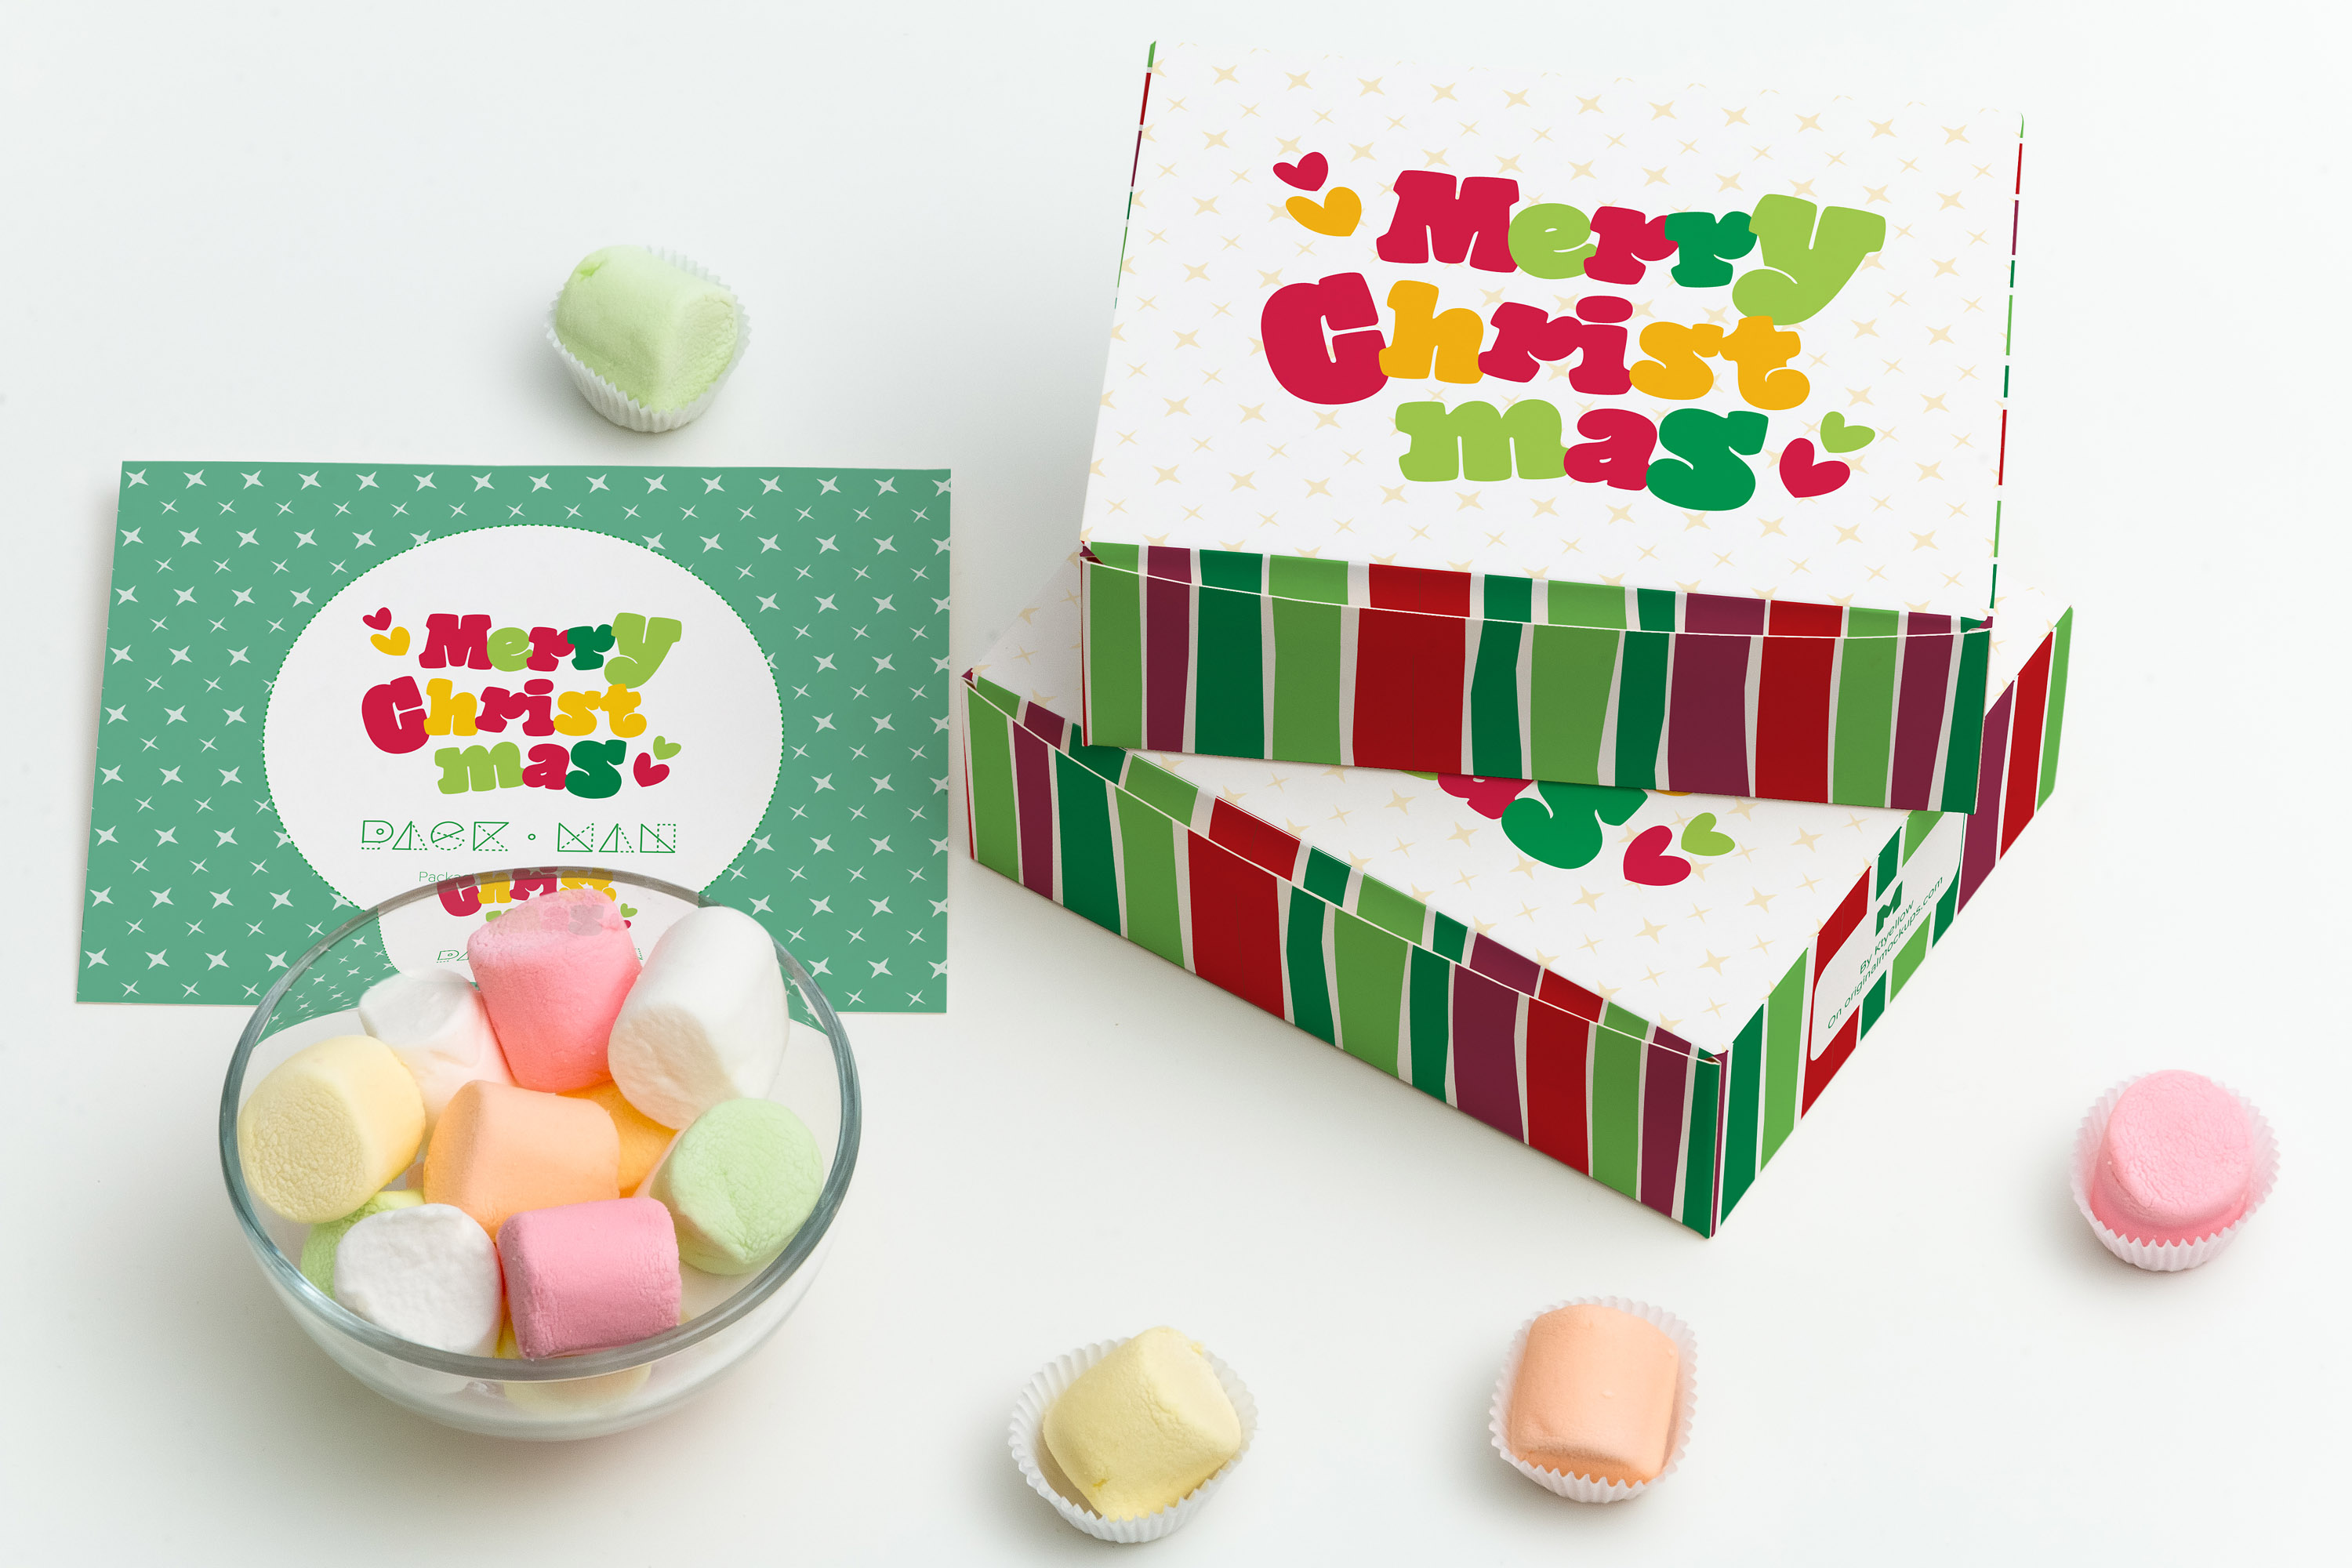 甜品包装礼盒设计图预览样机05 Sweet Box Mockup 05插图(1)